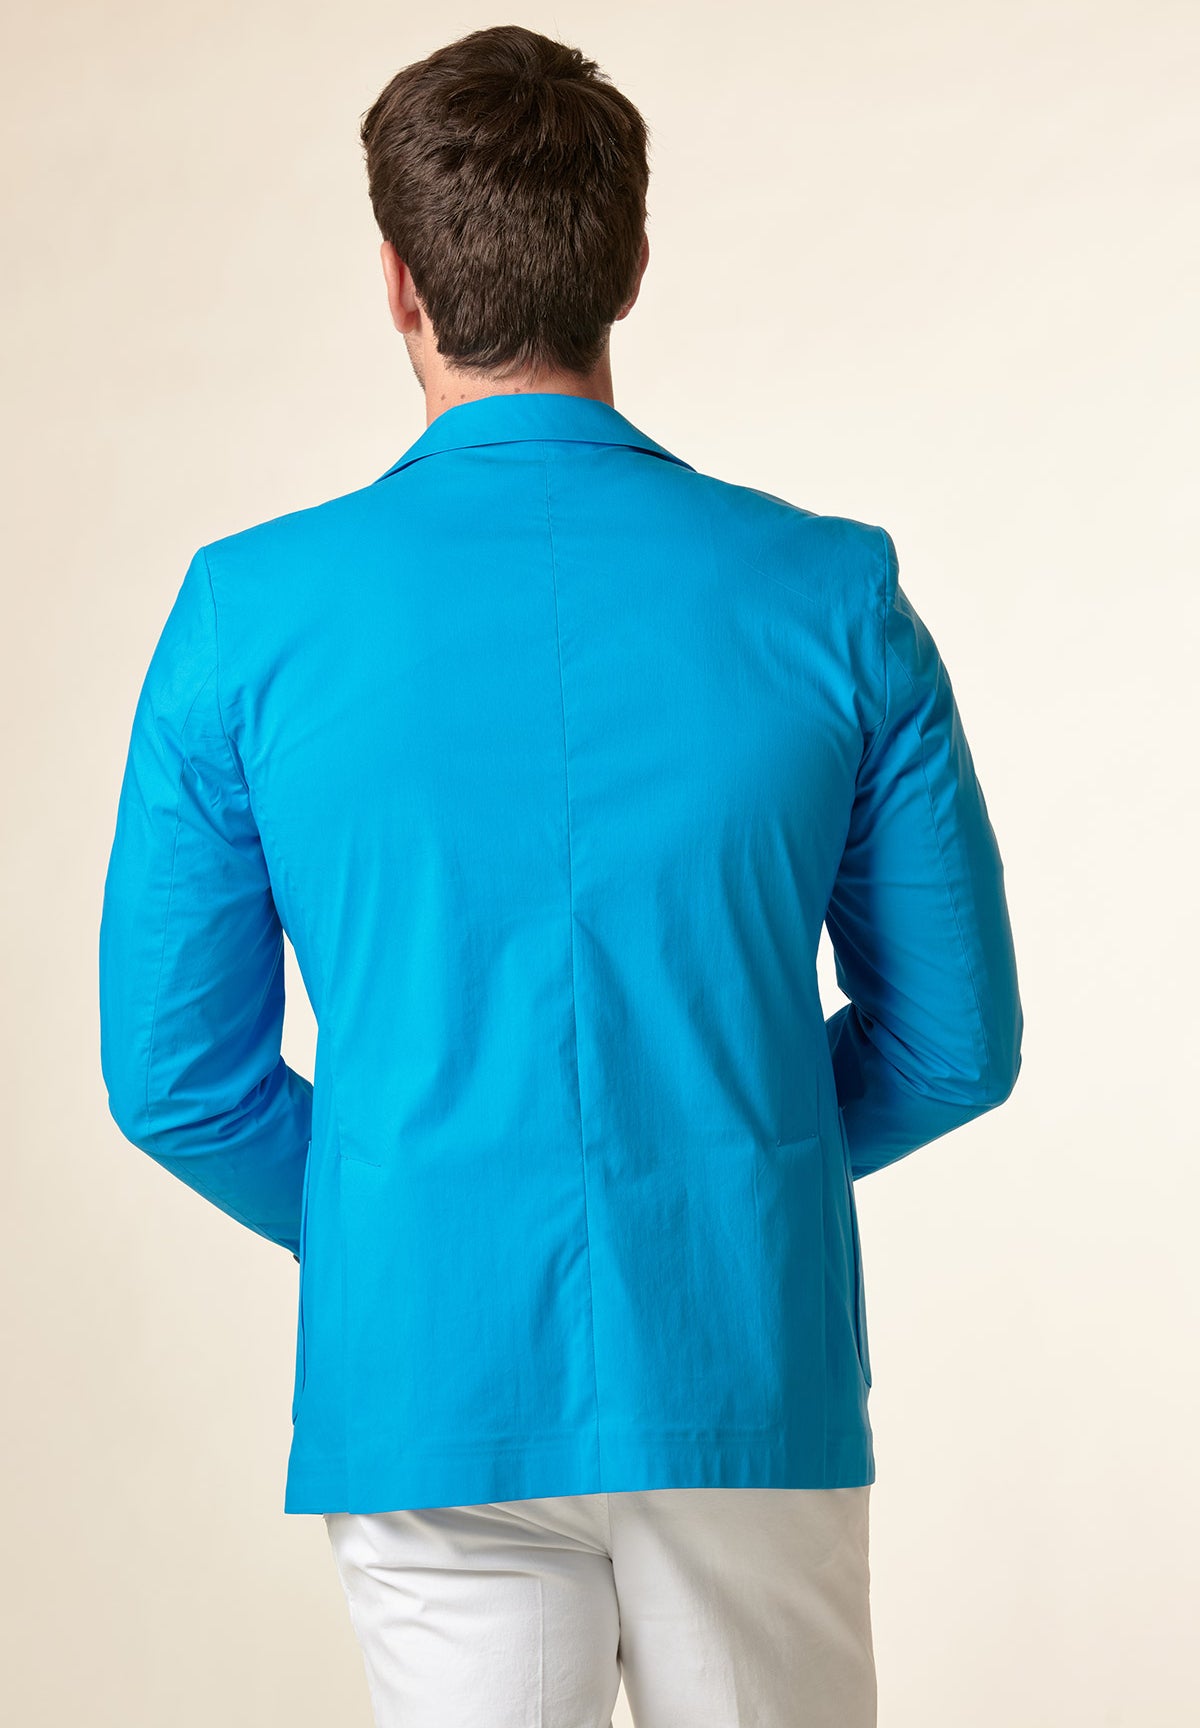 Türkisfarbene Jacke aus technischer Stretch-Baumwolle mit individueller Passform